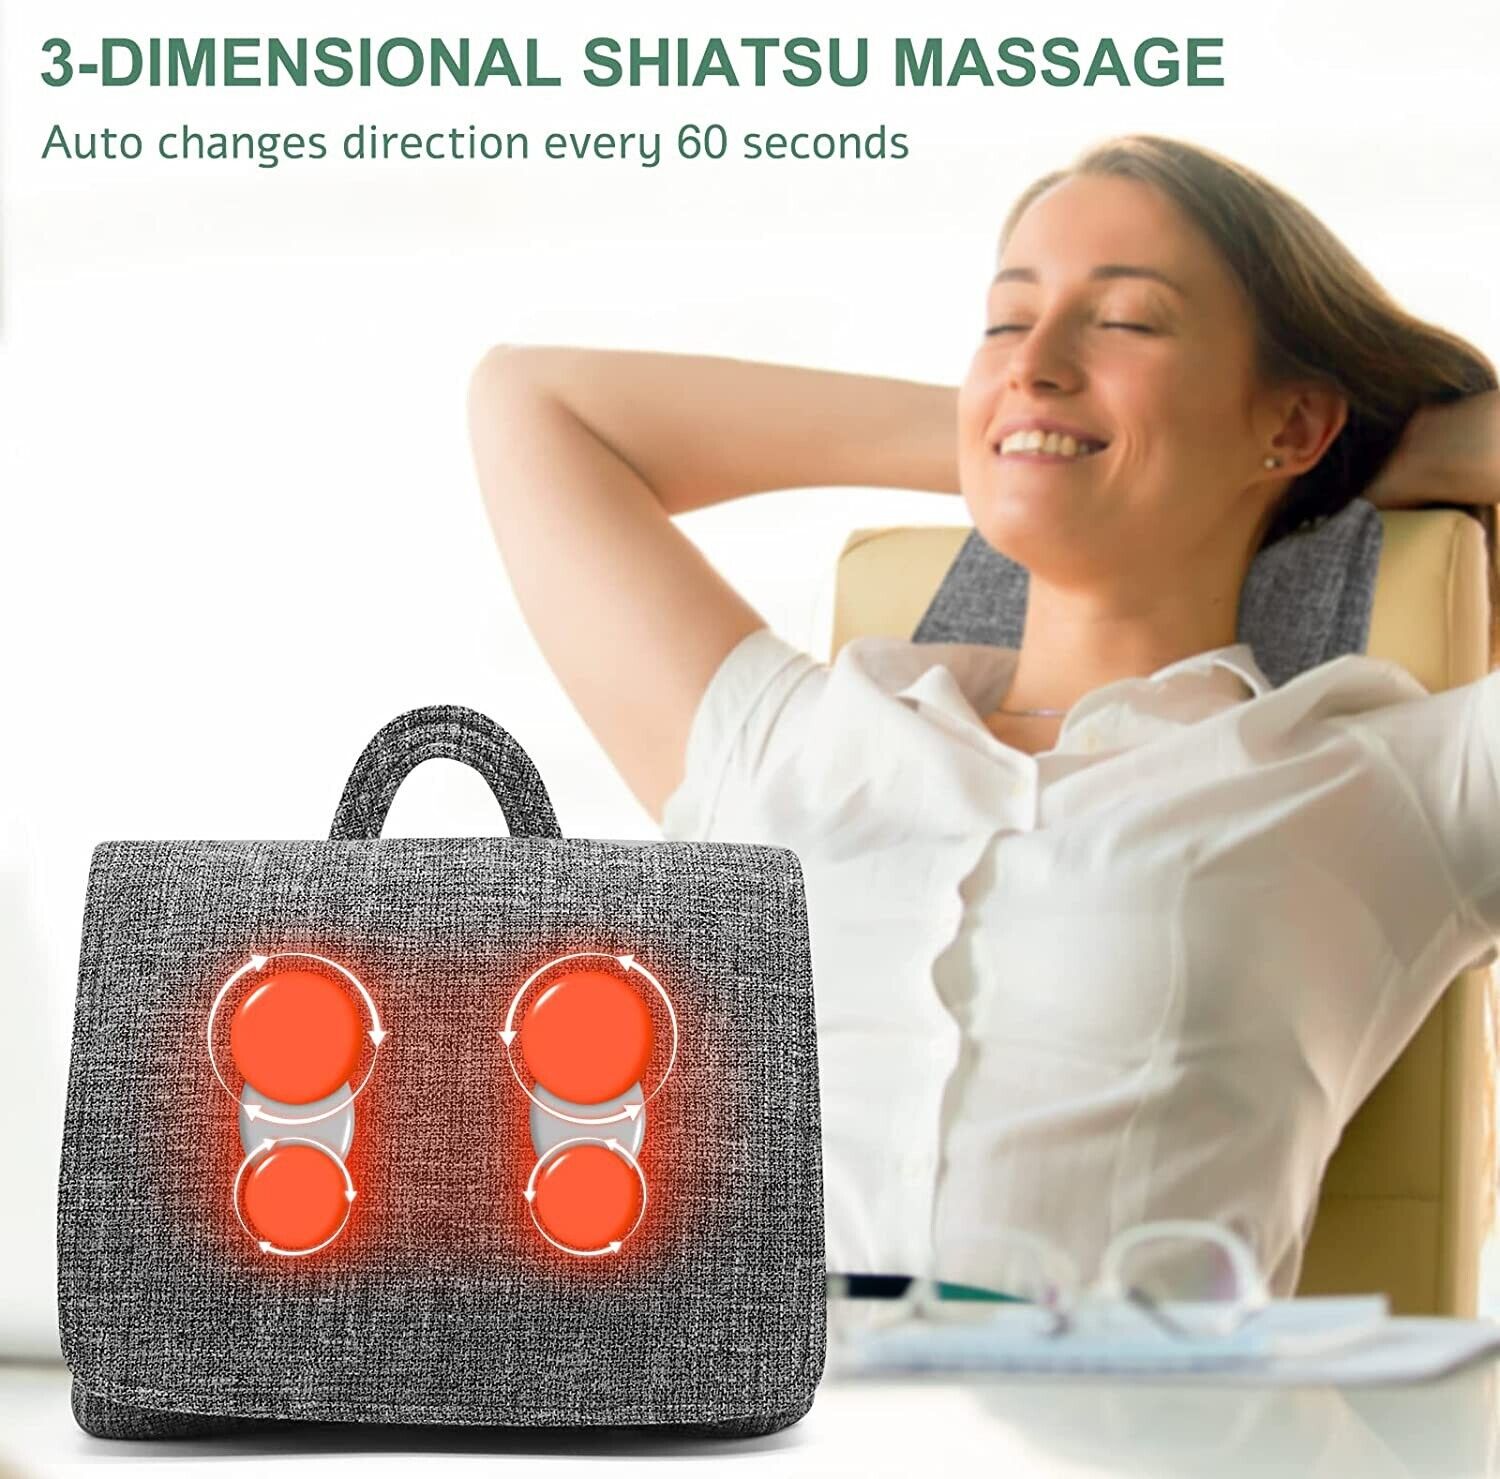 Keenray GEL-Massage-Kissen wiederaufladbar.Gezielte, tiefenwirksame Shiatsu